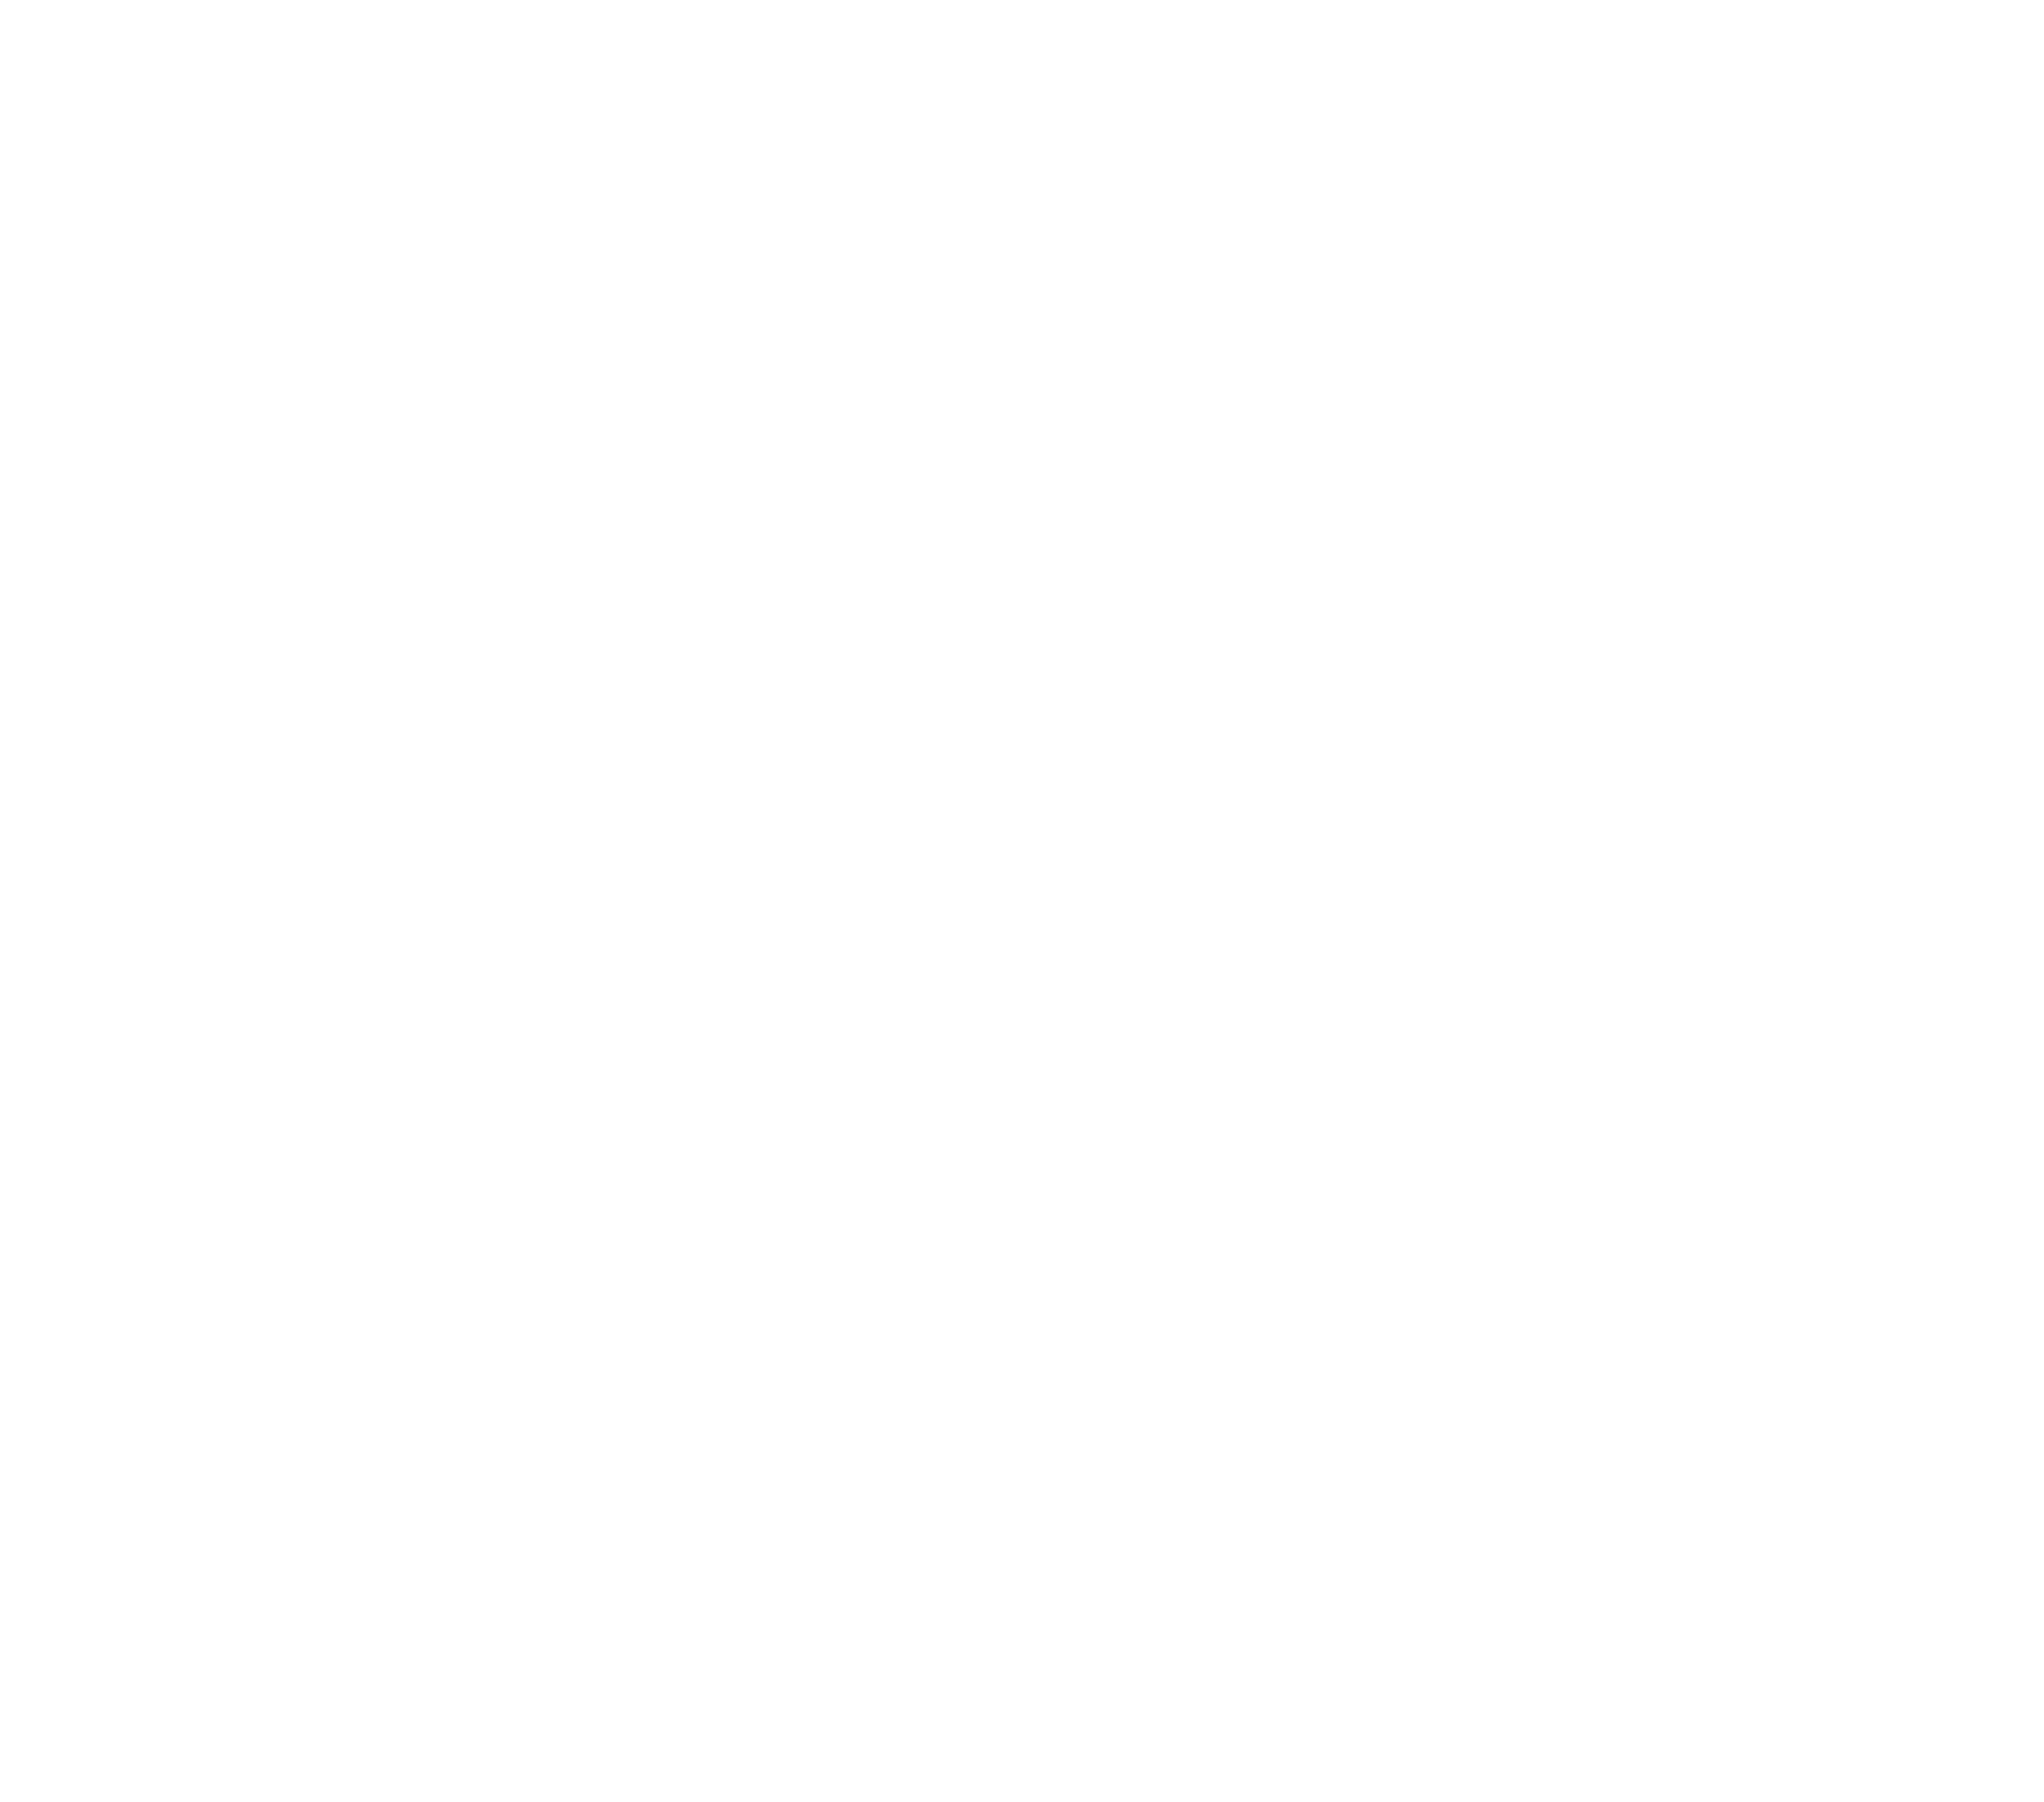 KelpHR